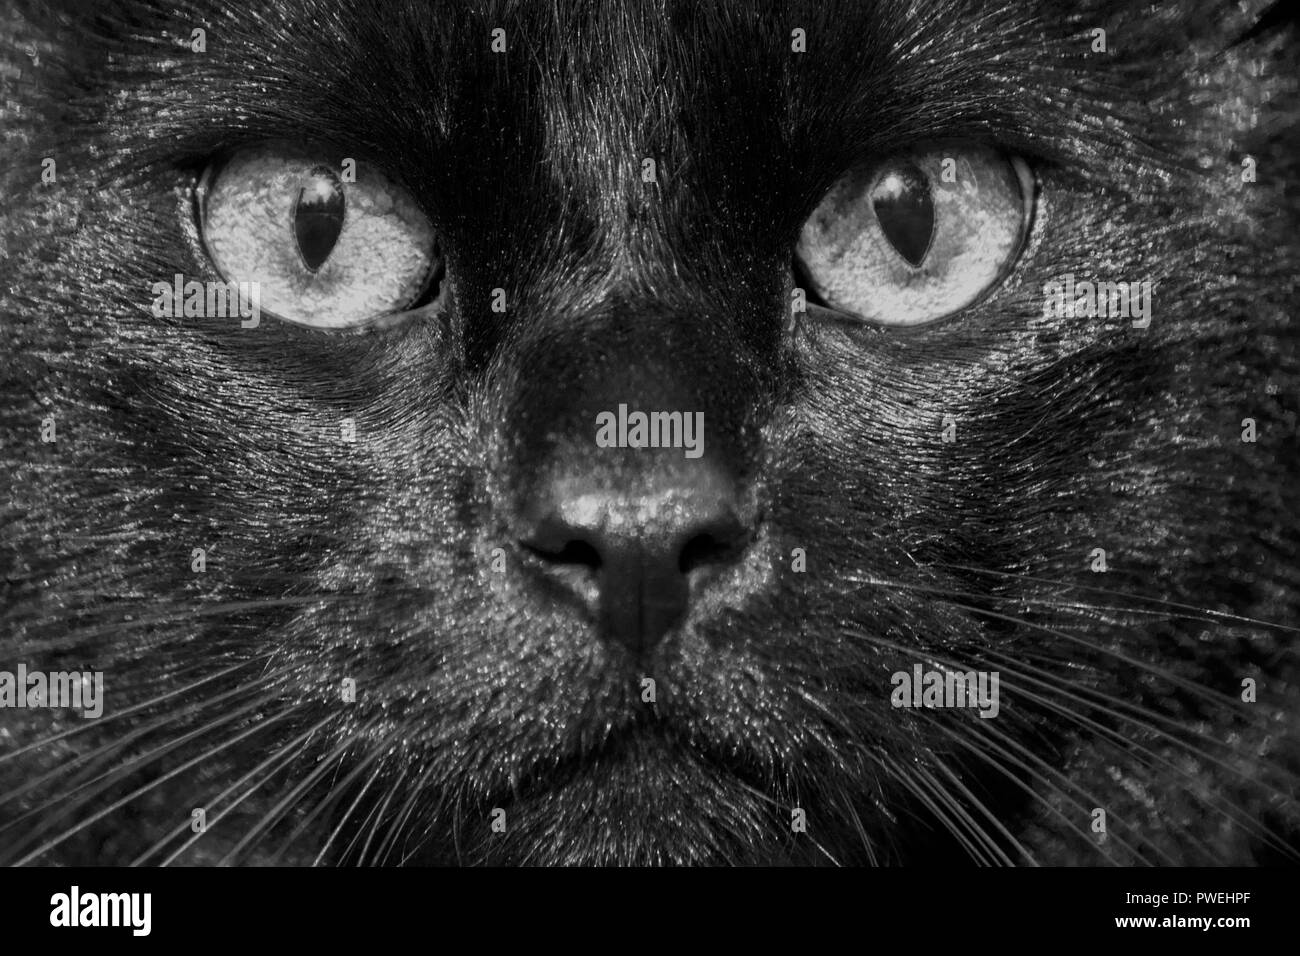 La faccia di un nero mongrel cat close-up, gli occhi, il naso e i baffi glisten al sole, la foto sulla strada, brillano di colore bianco con piccole macchie miscelati Foto Stock